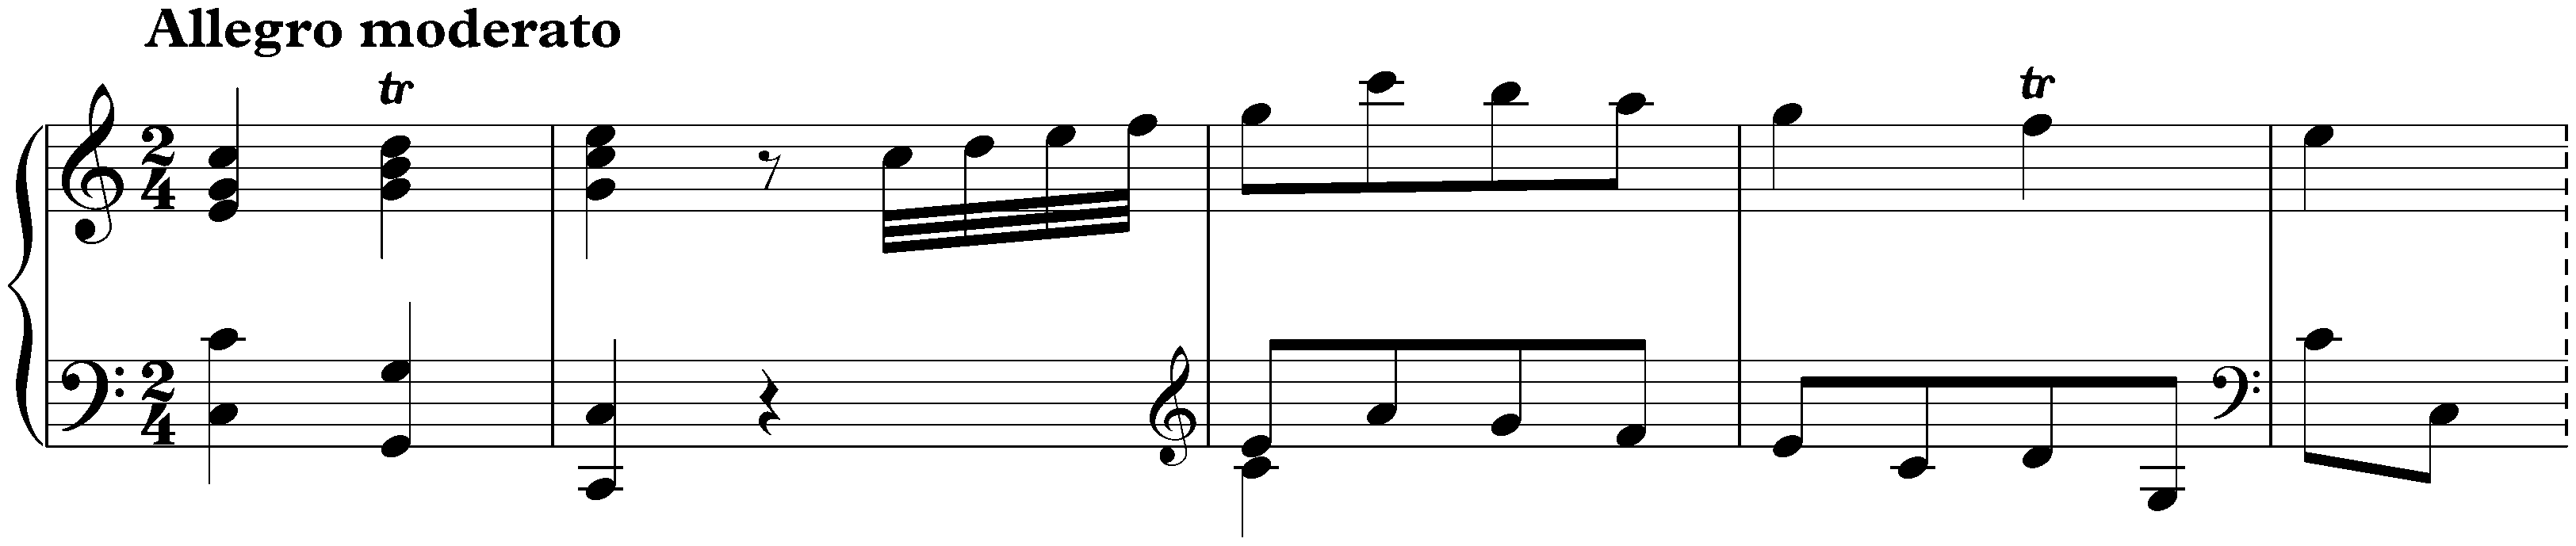 Sonata in C major, Hob. XVI:7; 1. Allegro moderato